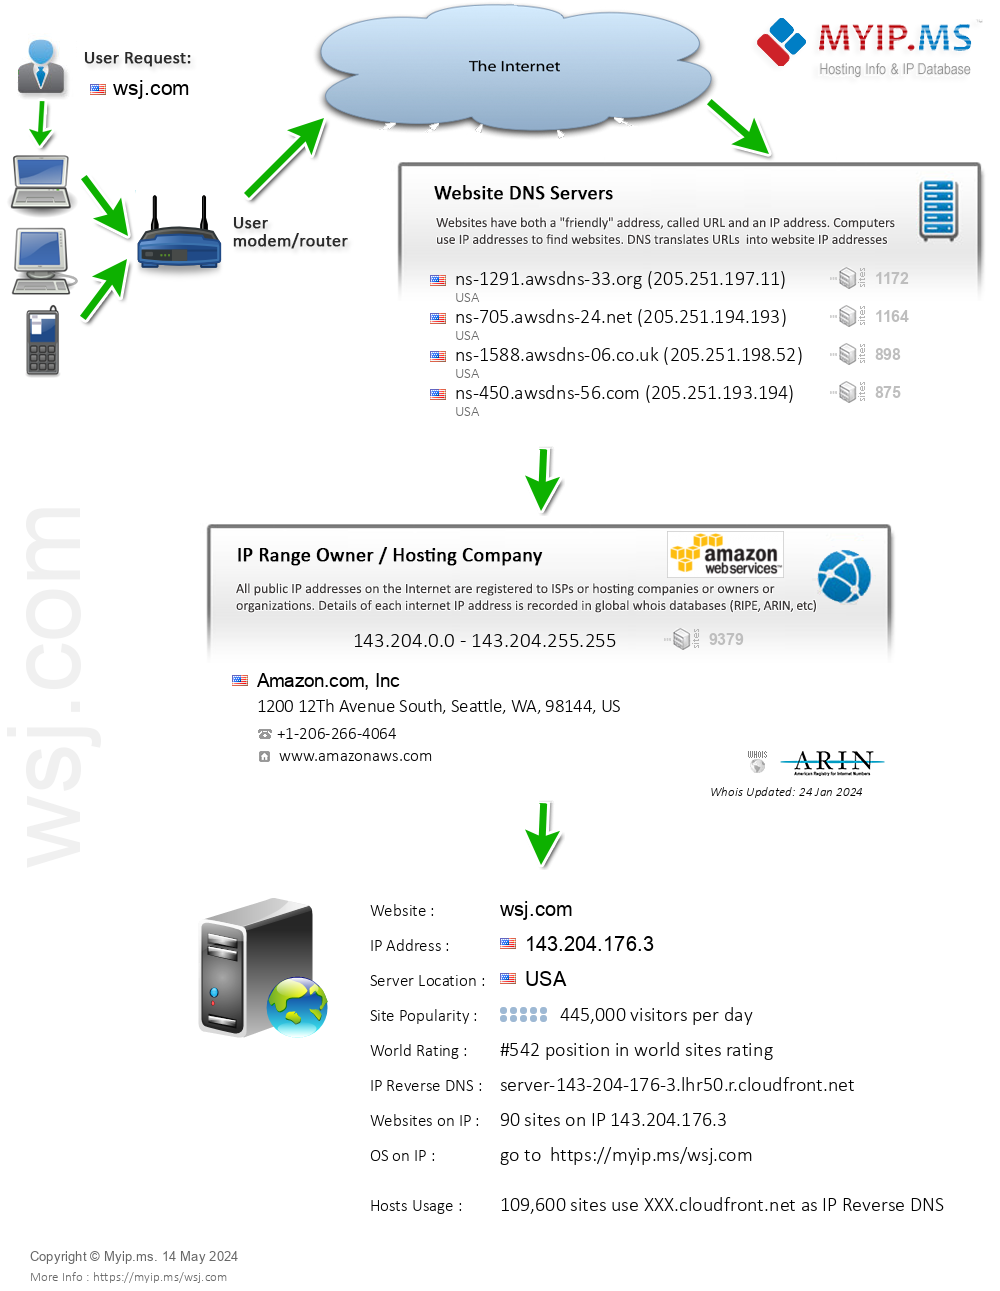 Wsj.com - Website Hosting Visual IP Diagram